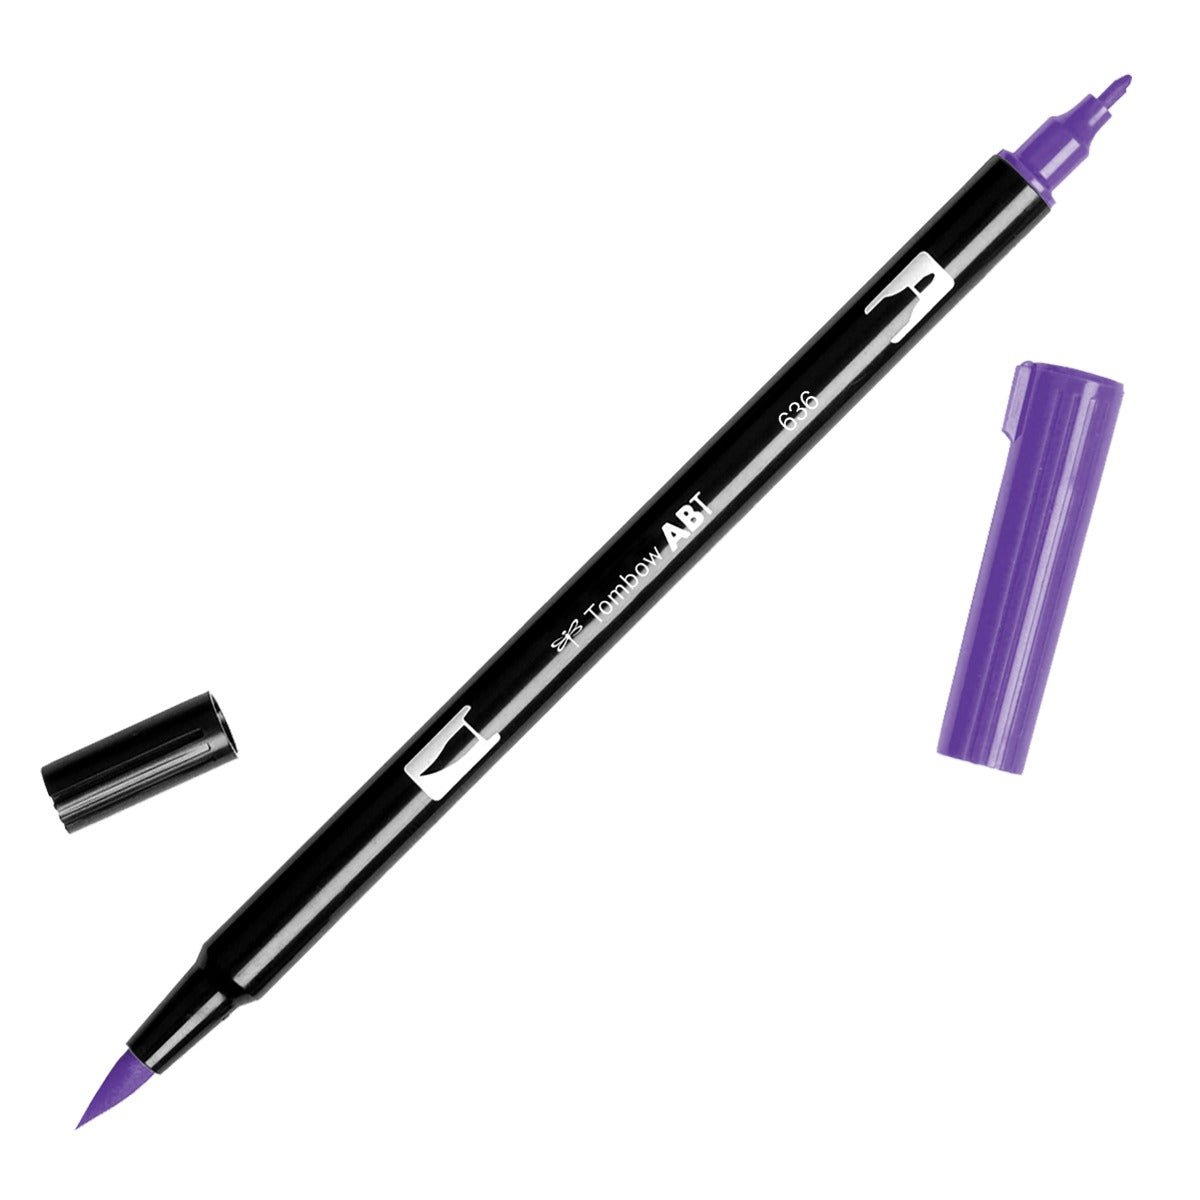 Tombow Dual Brush Pen 636 Imperial Purple - theartshop.com.au